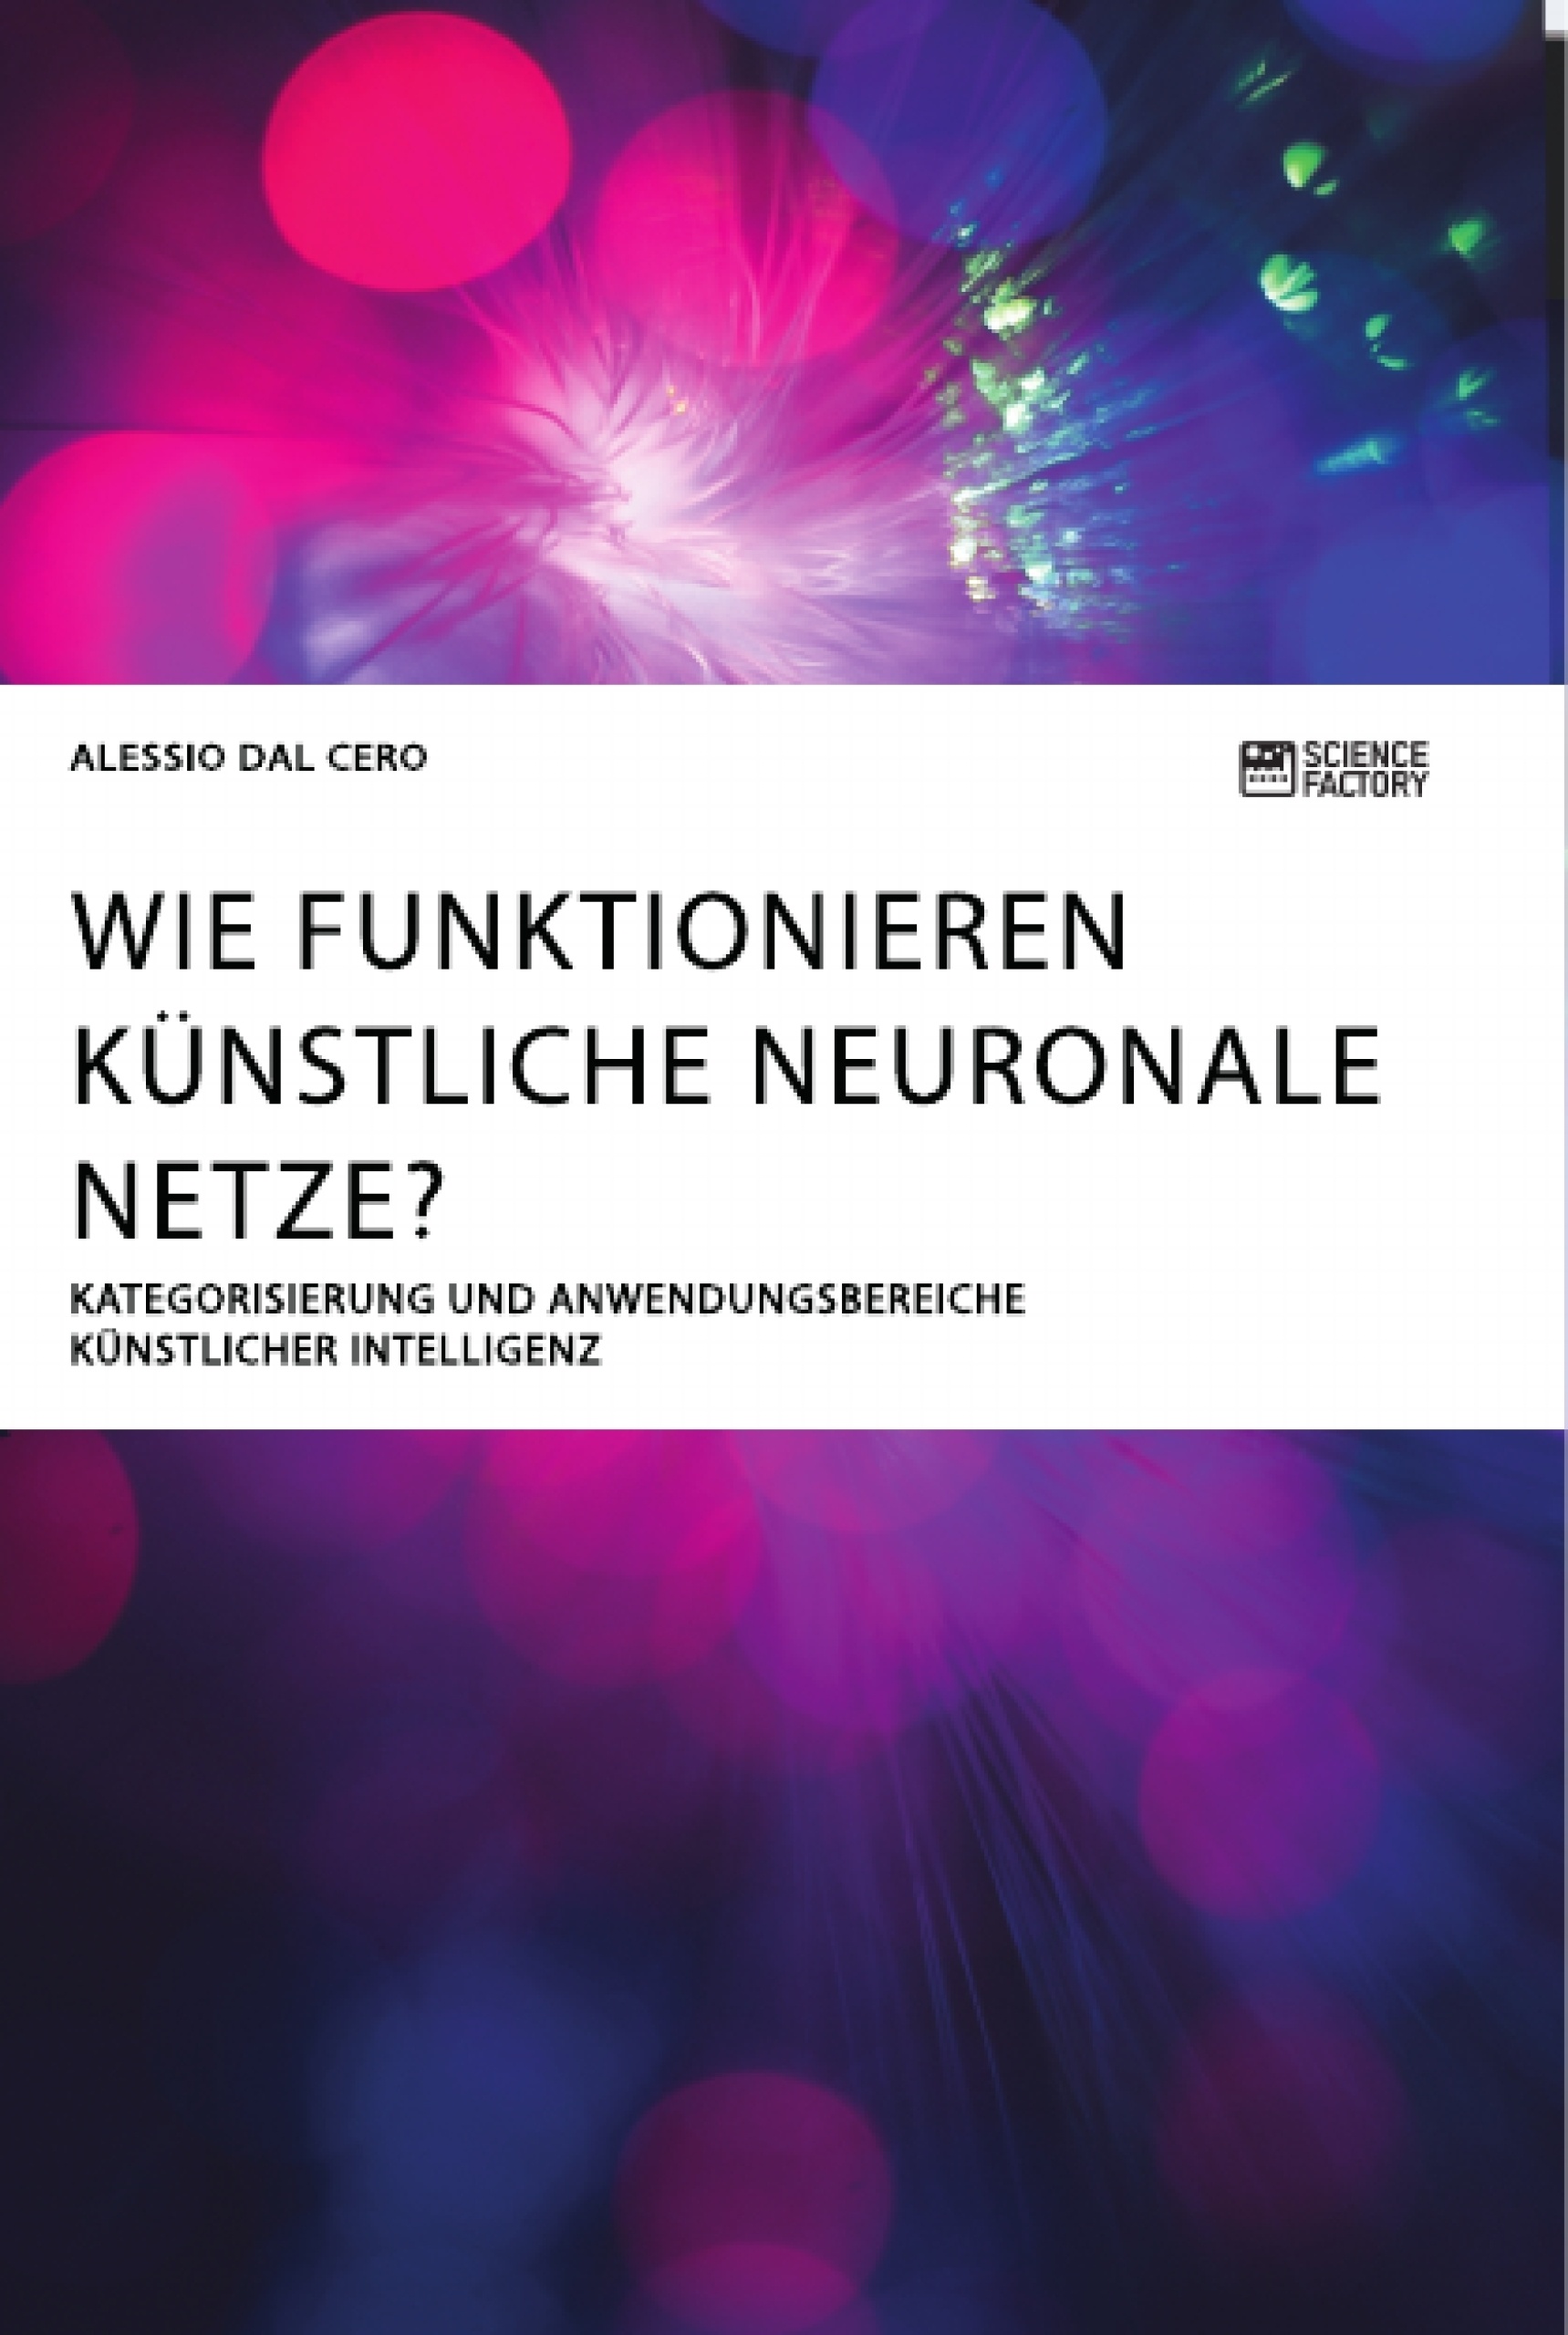 Titel: Wie funktionieren künstliche neuronale Netze? Kategorisierung und Anwendungsbereiche künstlicher Intelligenz